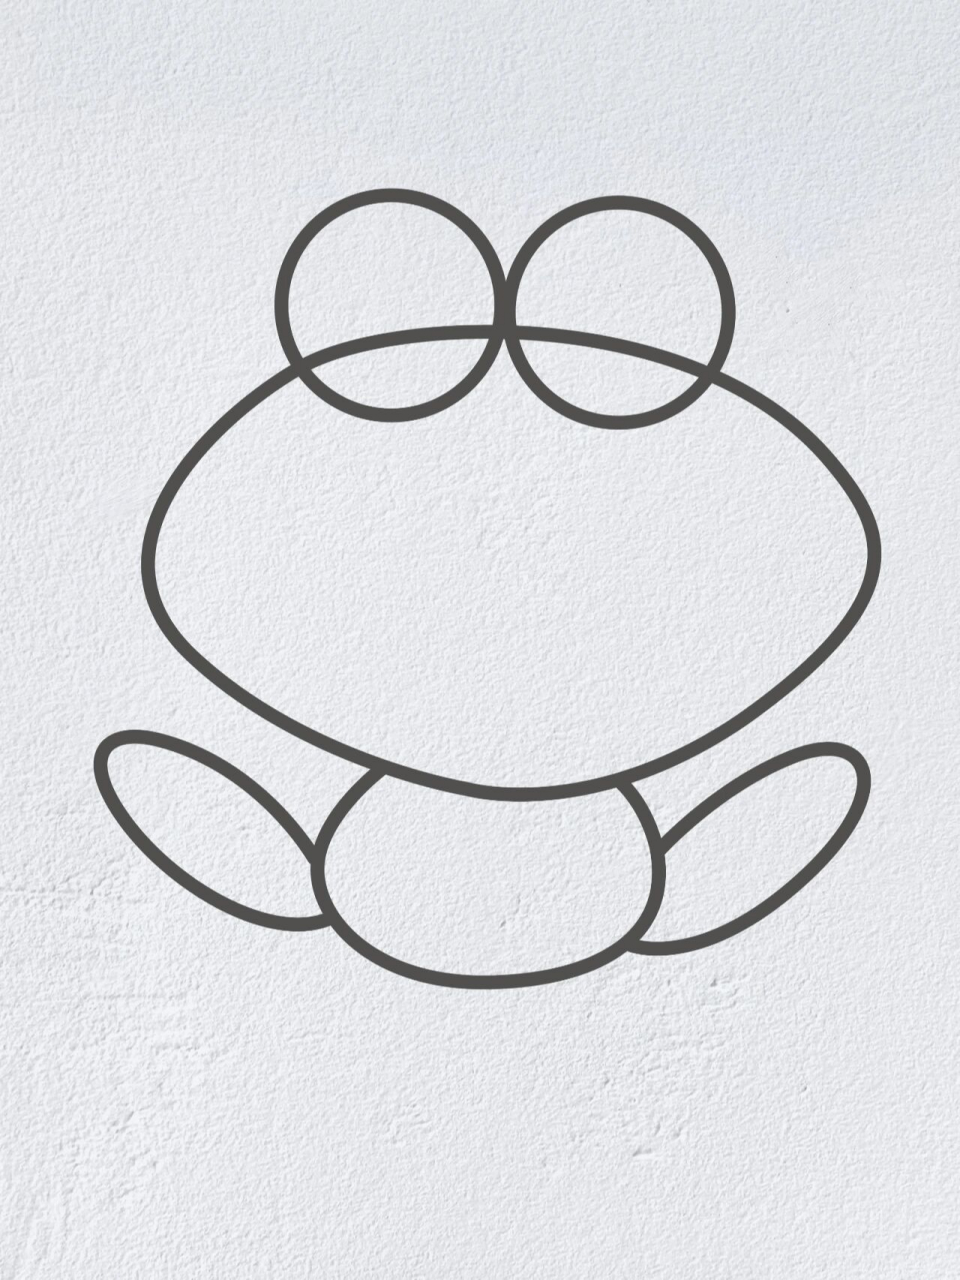 青蛙简笔画可爱简单图片